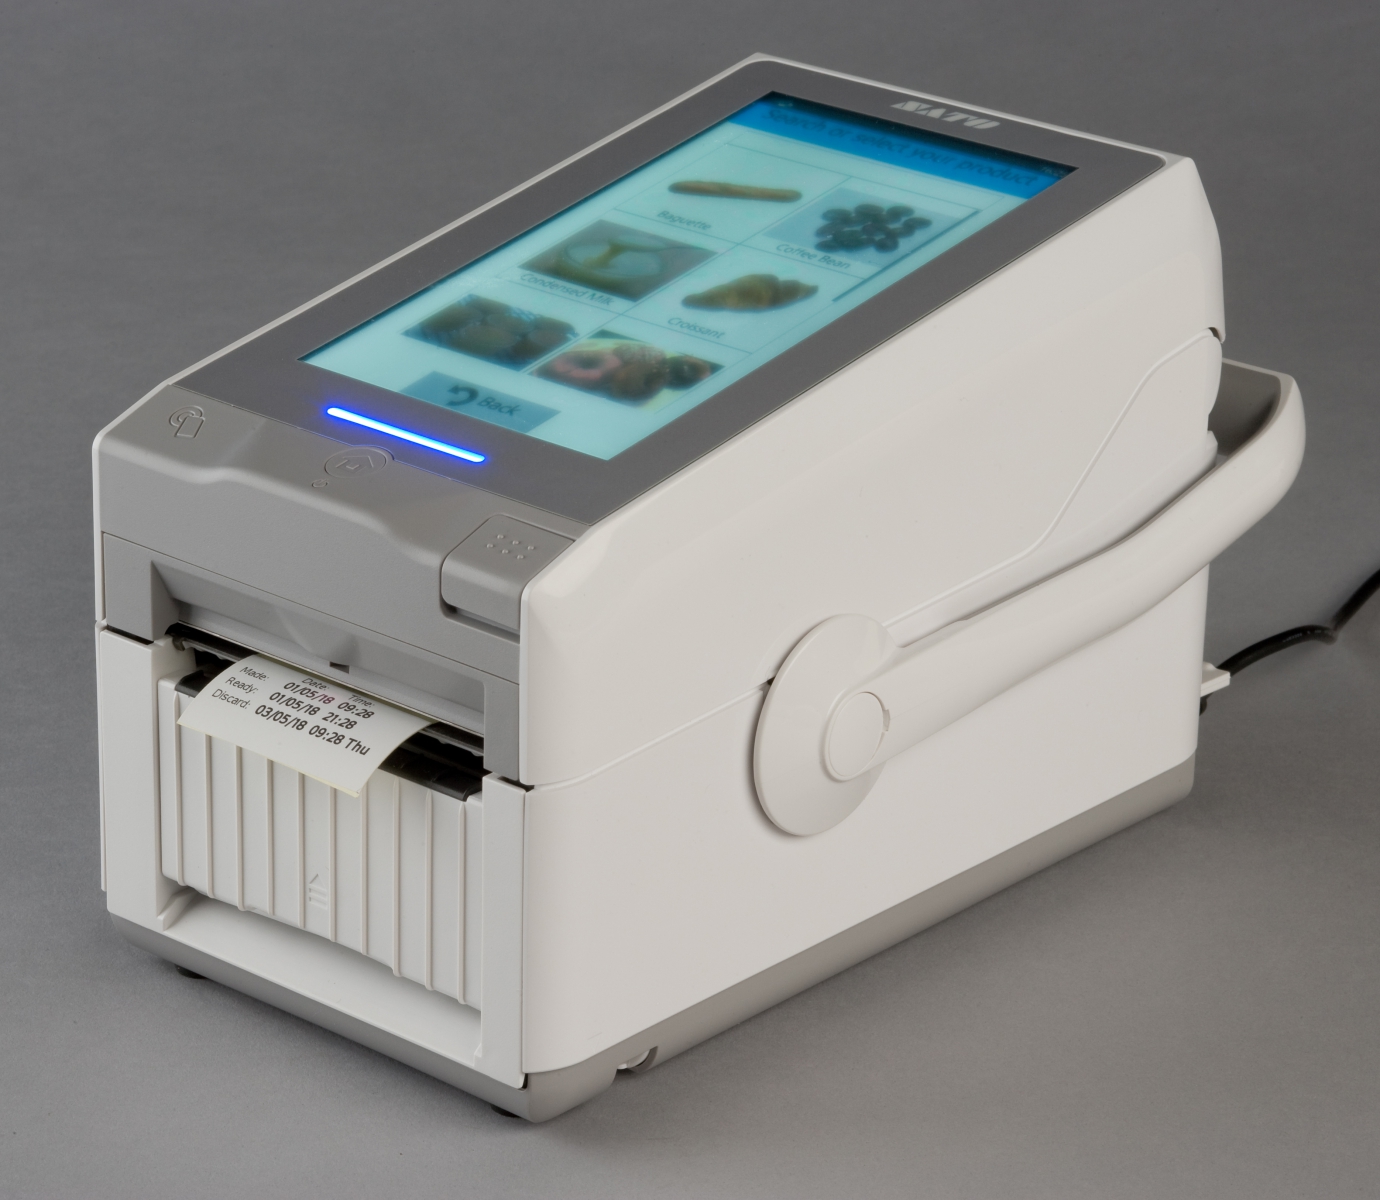 Stampante intelligente SATO usato per garantire igiene, tracciabilità e  rispetto dei protocolli HACCP - Macchine Alimentari